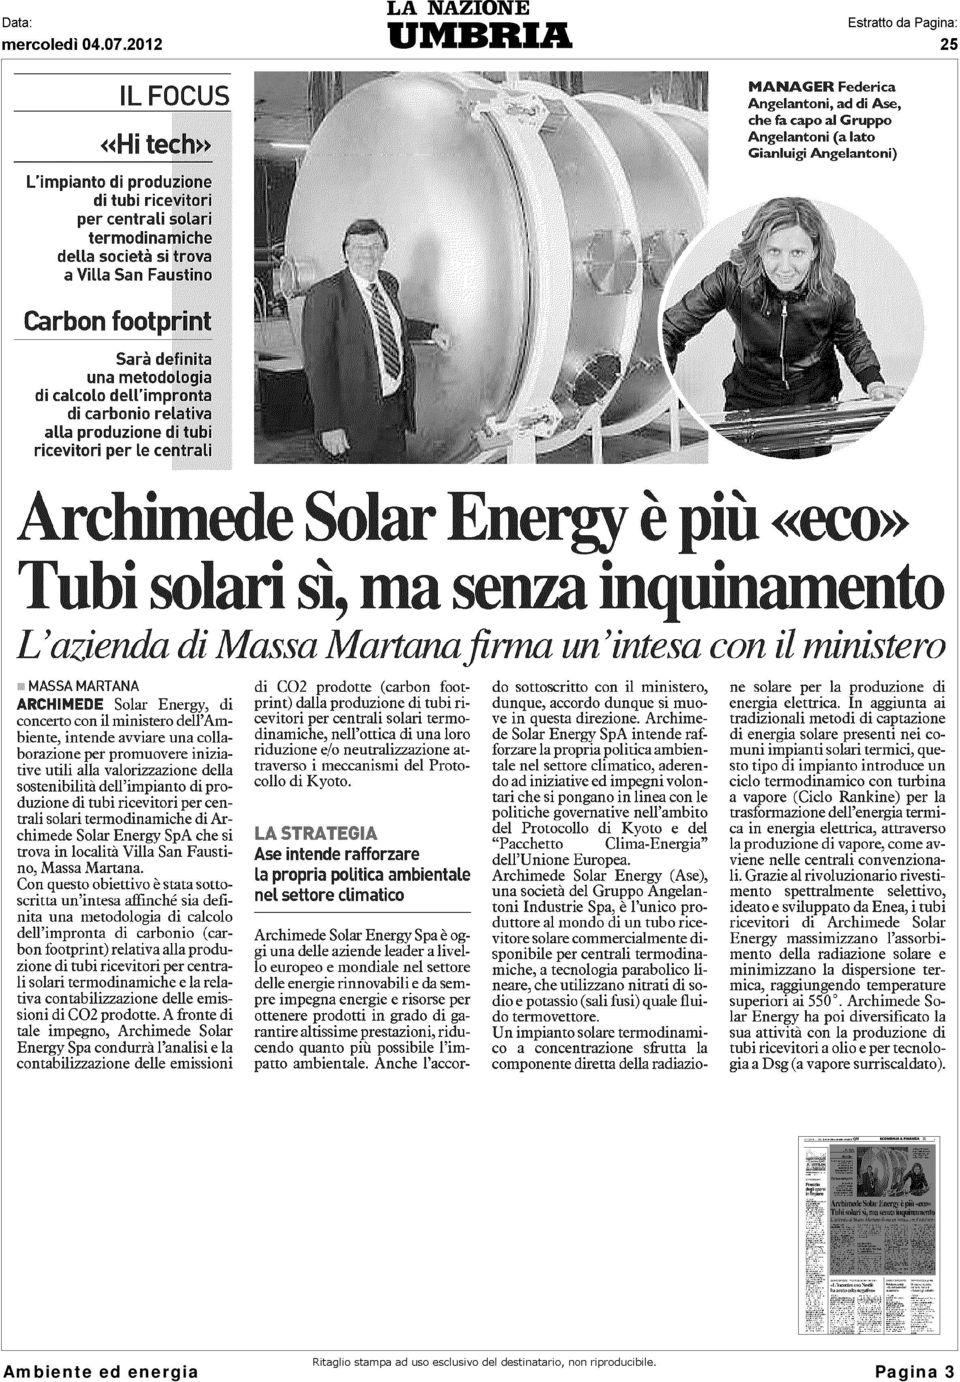 az di Massa i MASSA MARTANA ARCHI MEDE Solar Energy, di concerto con il ministero dell'ambiente, intende avviare una collaborazione per promuovere iniziative utili alla valorizzazione della